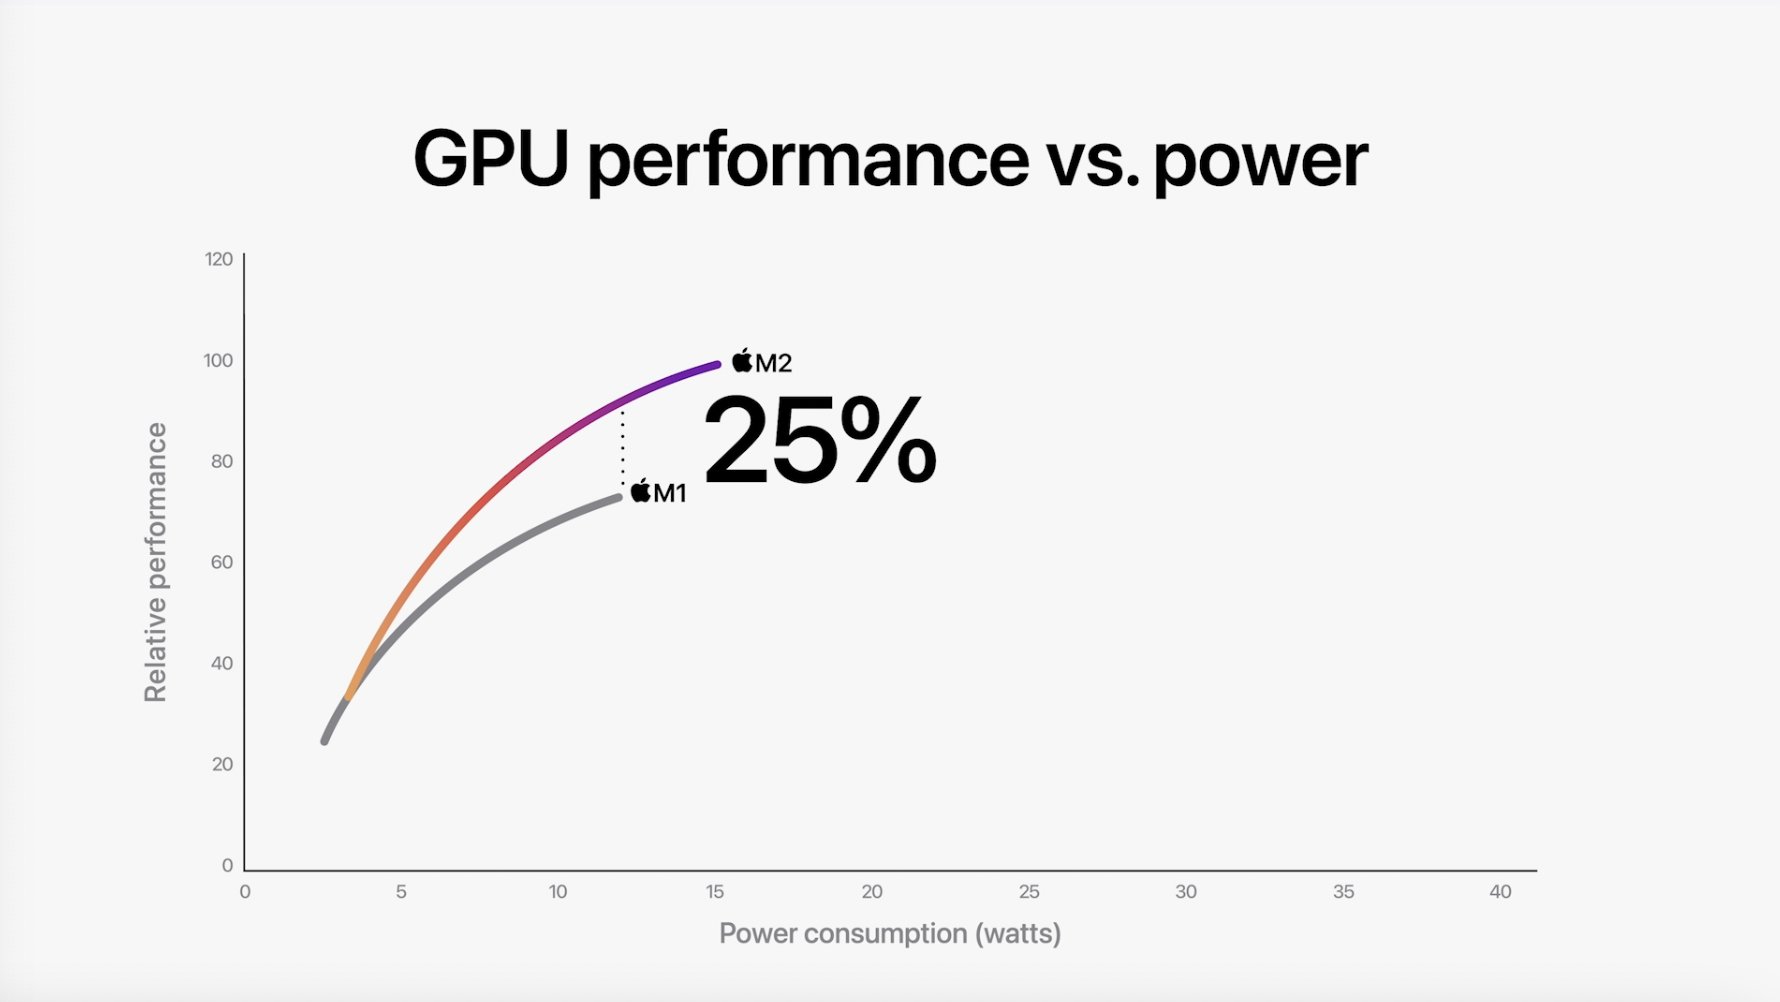 GPU un entre un 25 y un 35% más rápida que la del M1